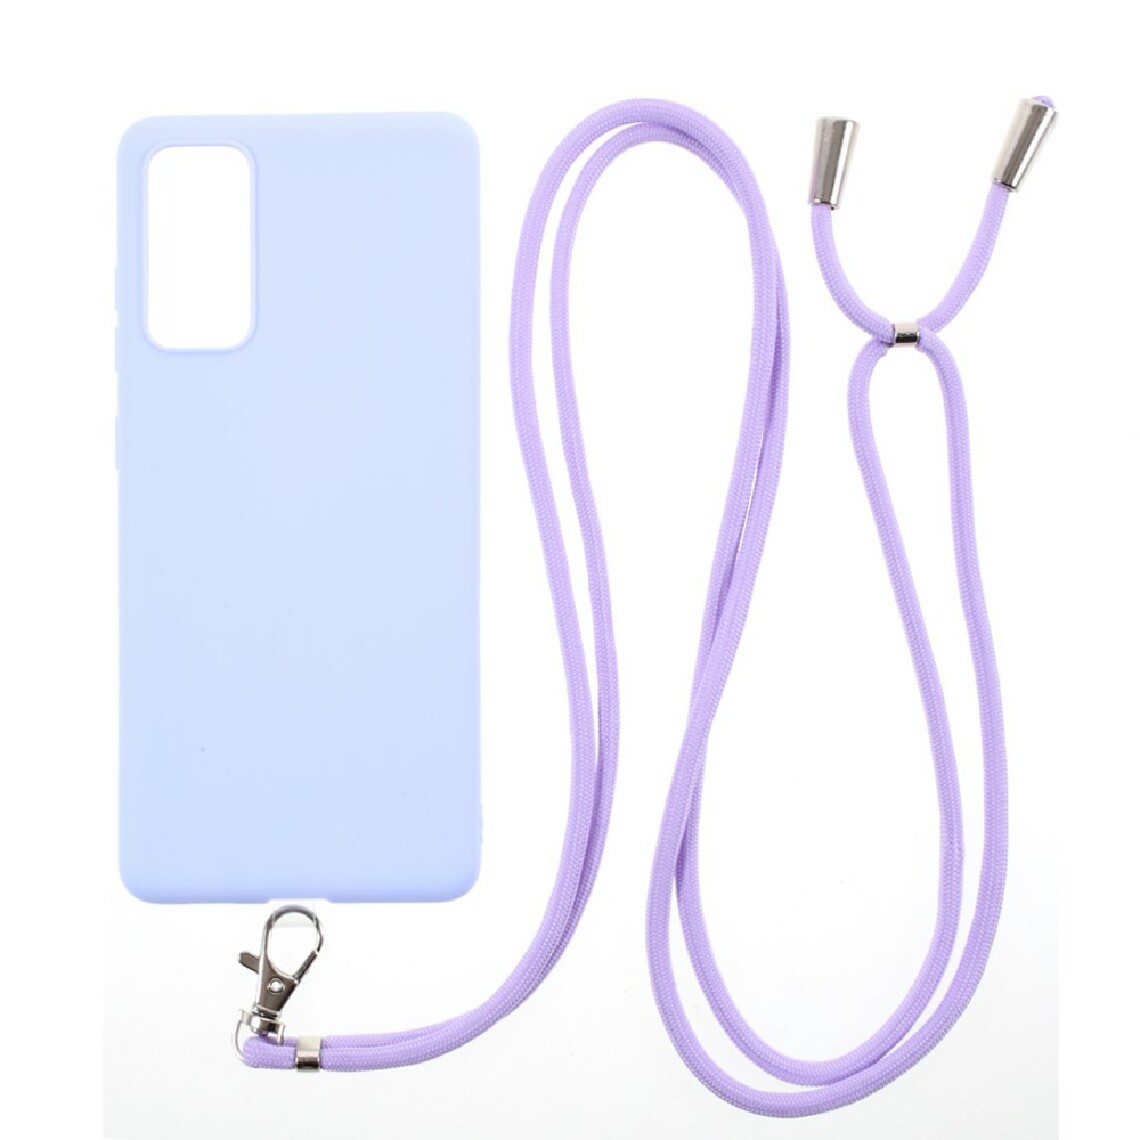 Other - Coque en TPU bonbon de couleur unie avec cordon bleu clair pour votre Samsung Galaxy S20 FE/S20 FE 5G - Coque, étui smartphone